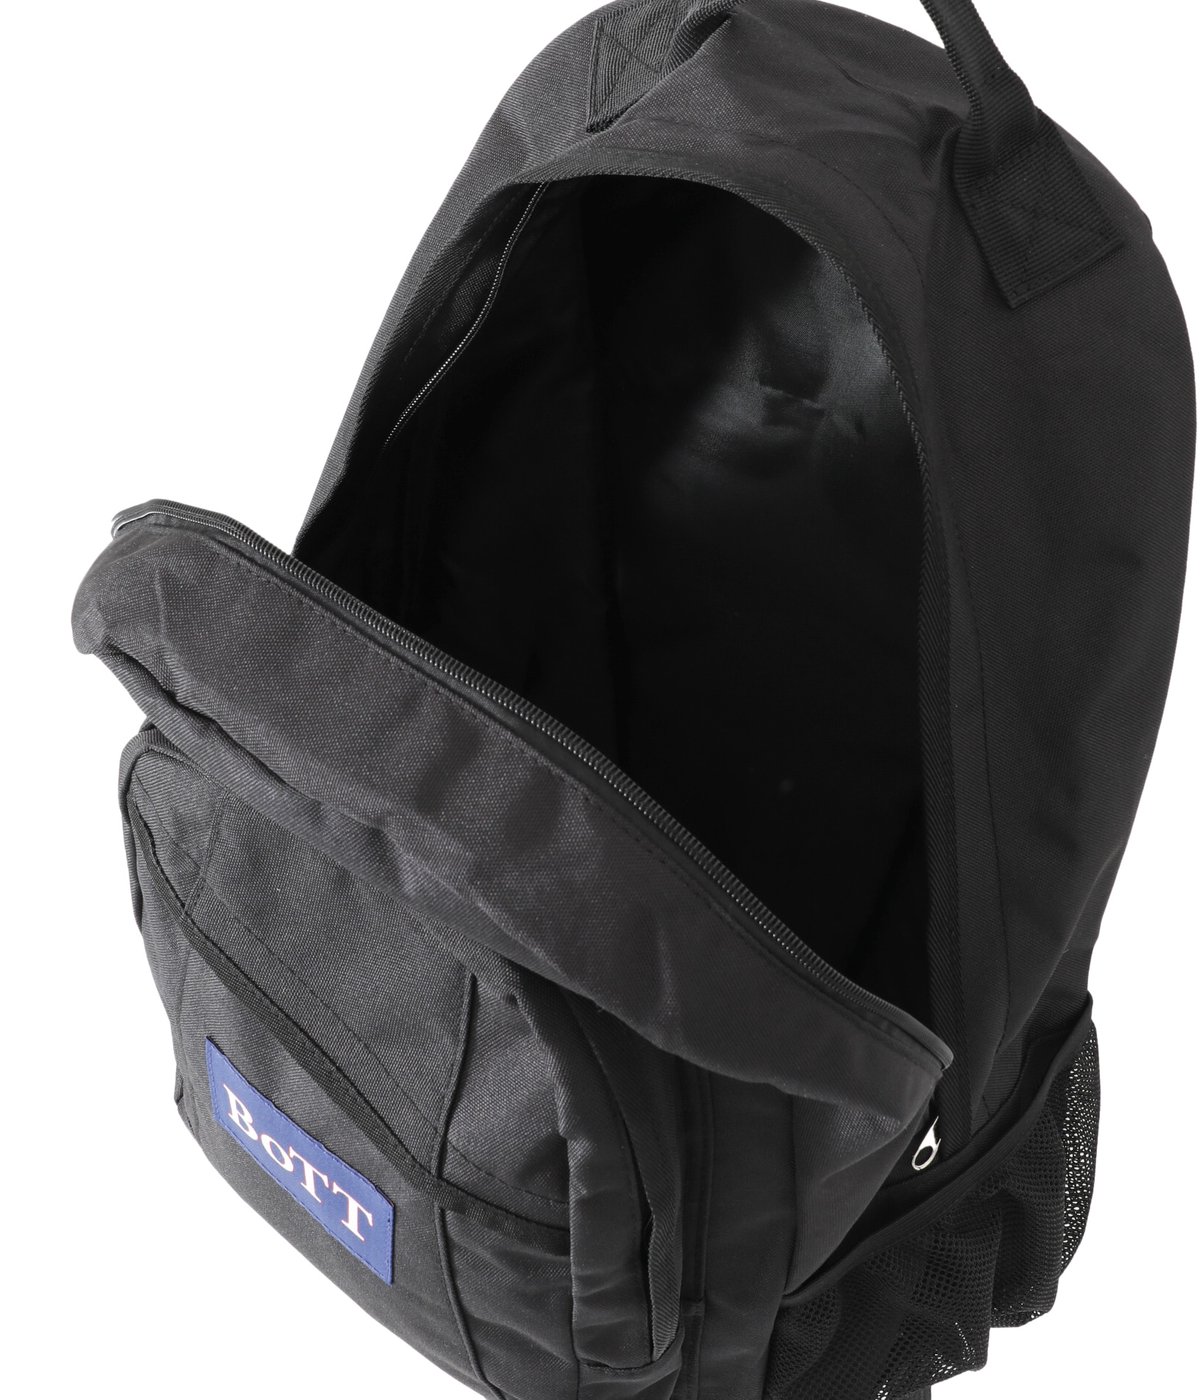 BoTT Sport Backpack Black